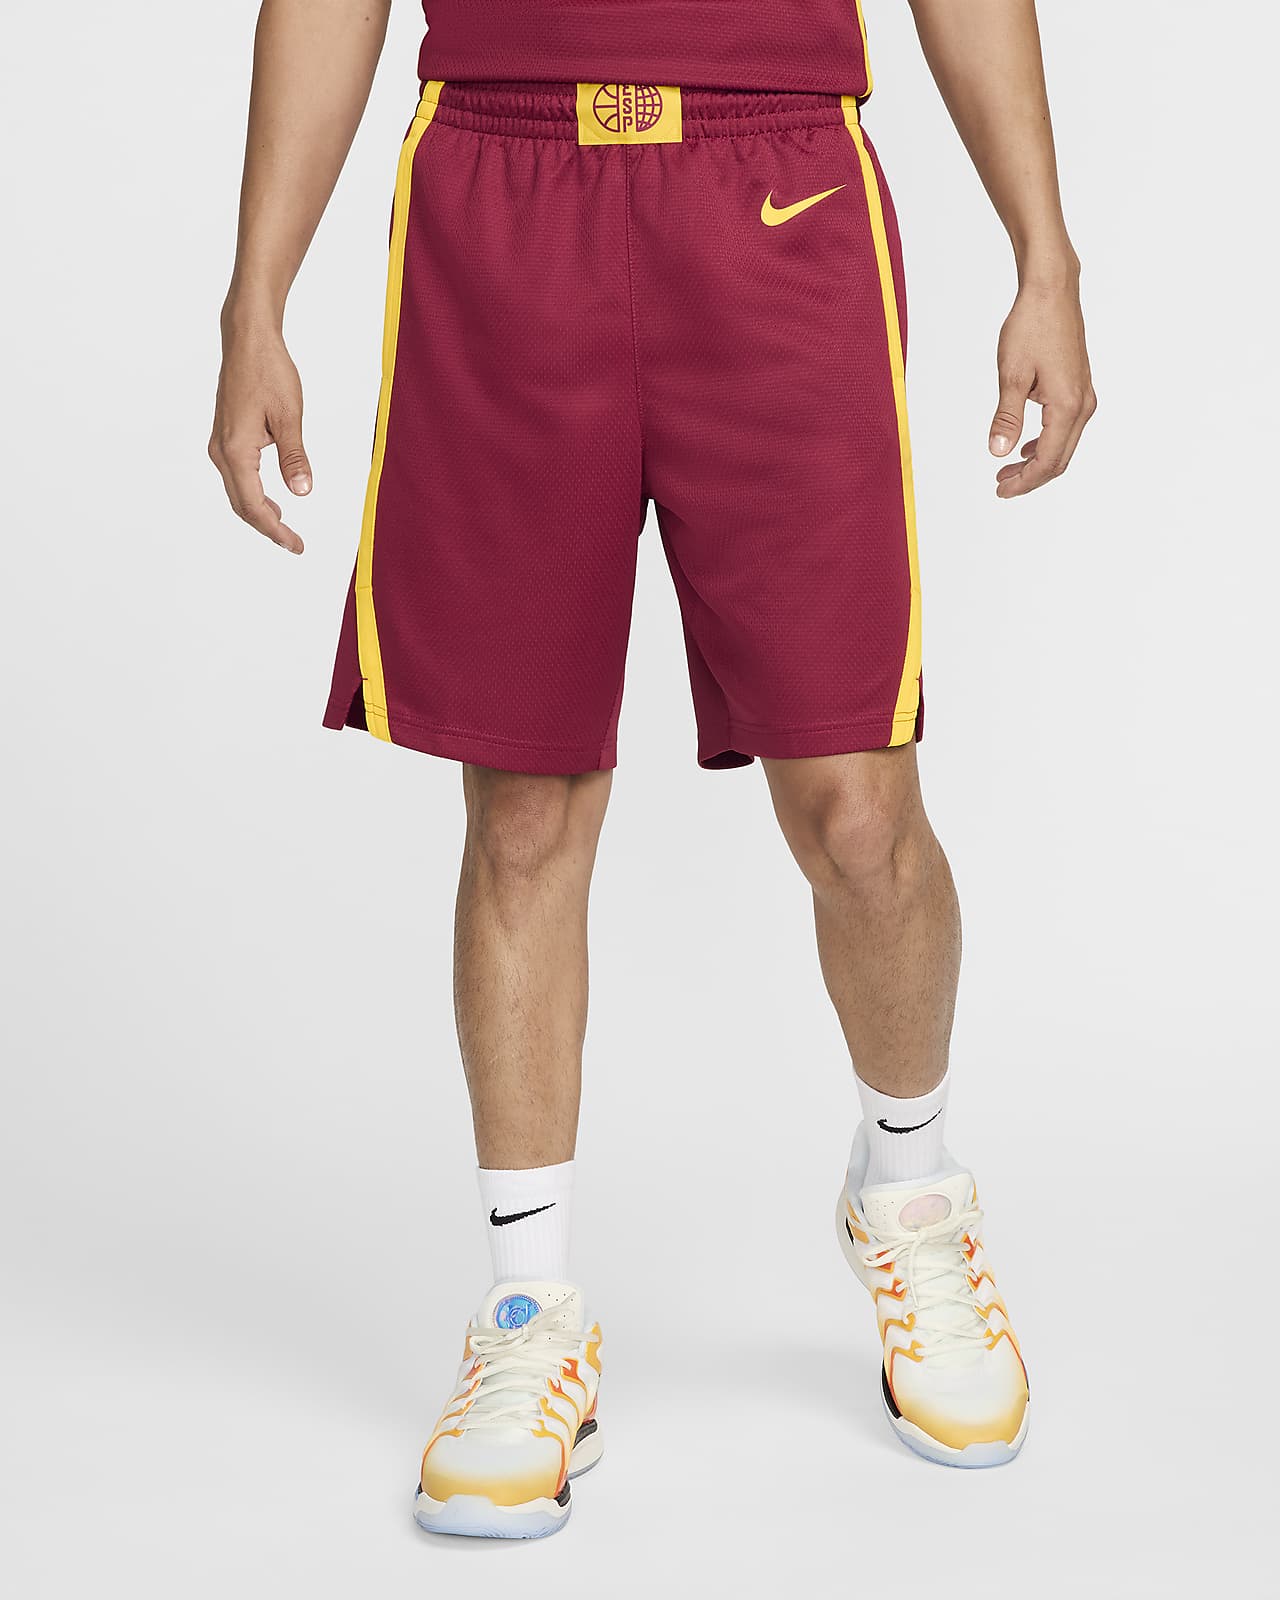 Spanien Limited Road Nike Basketballtrikot (Herren)